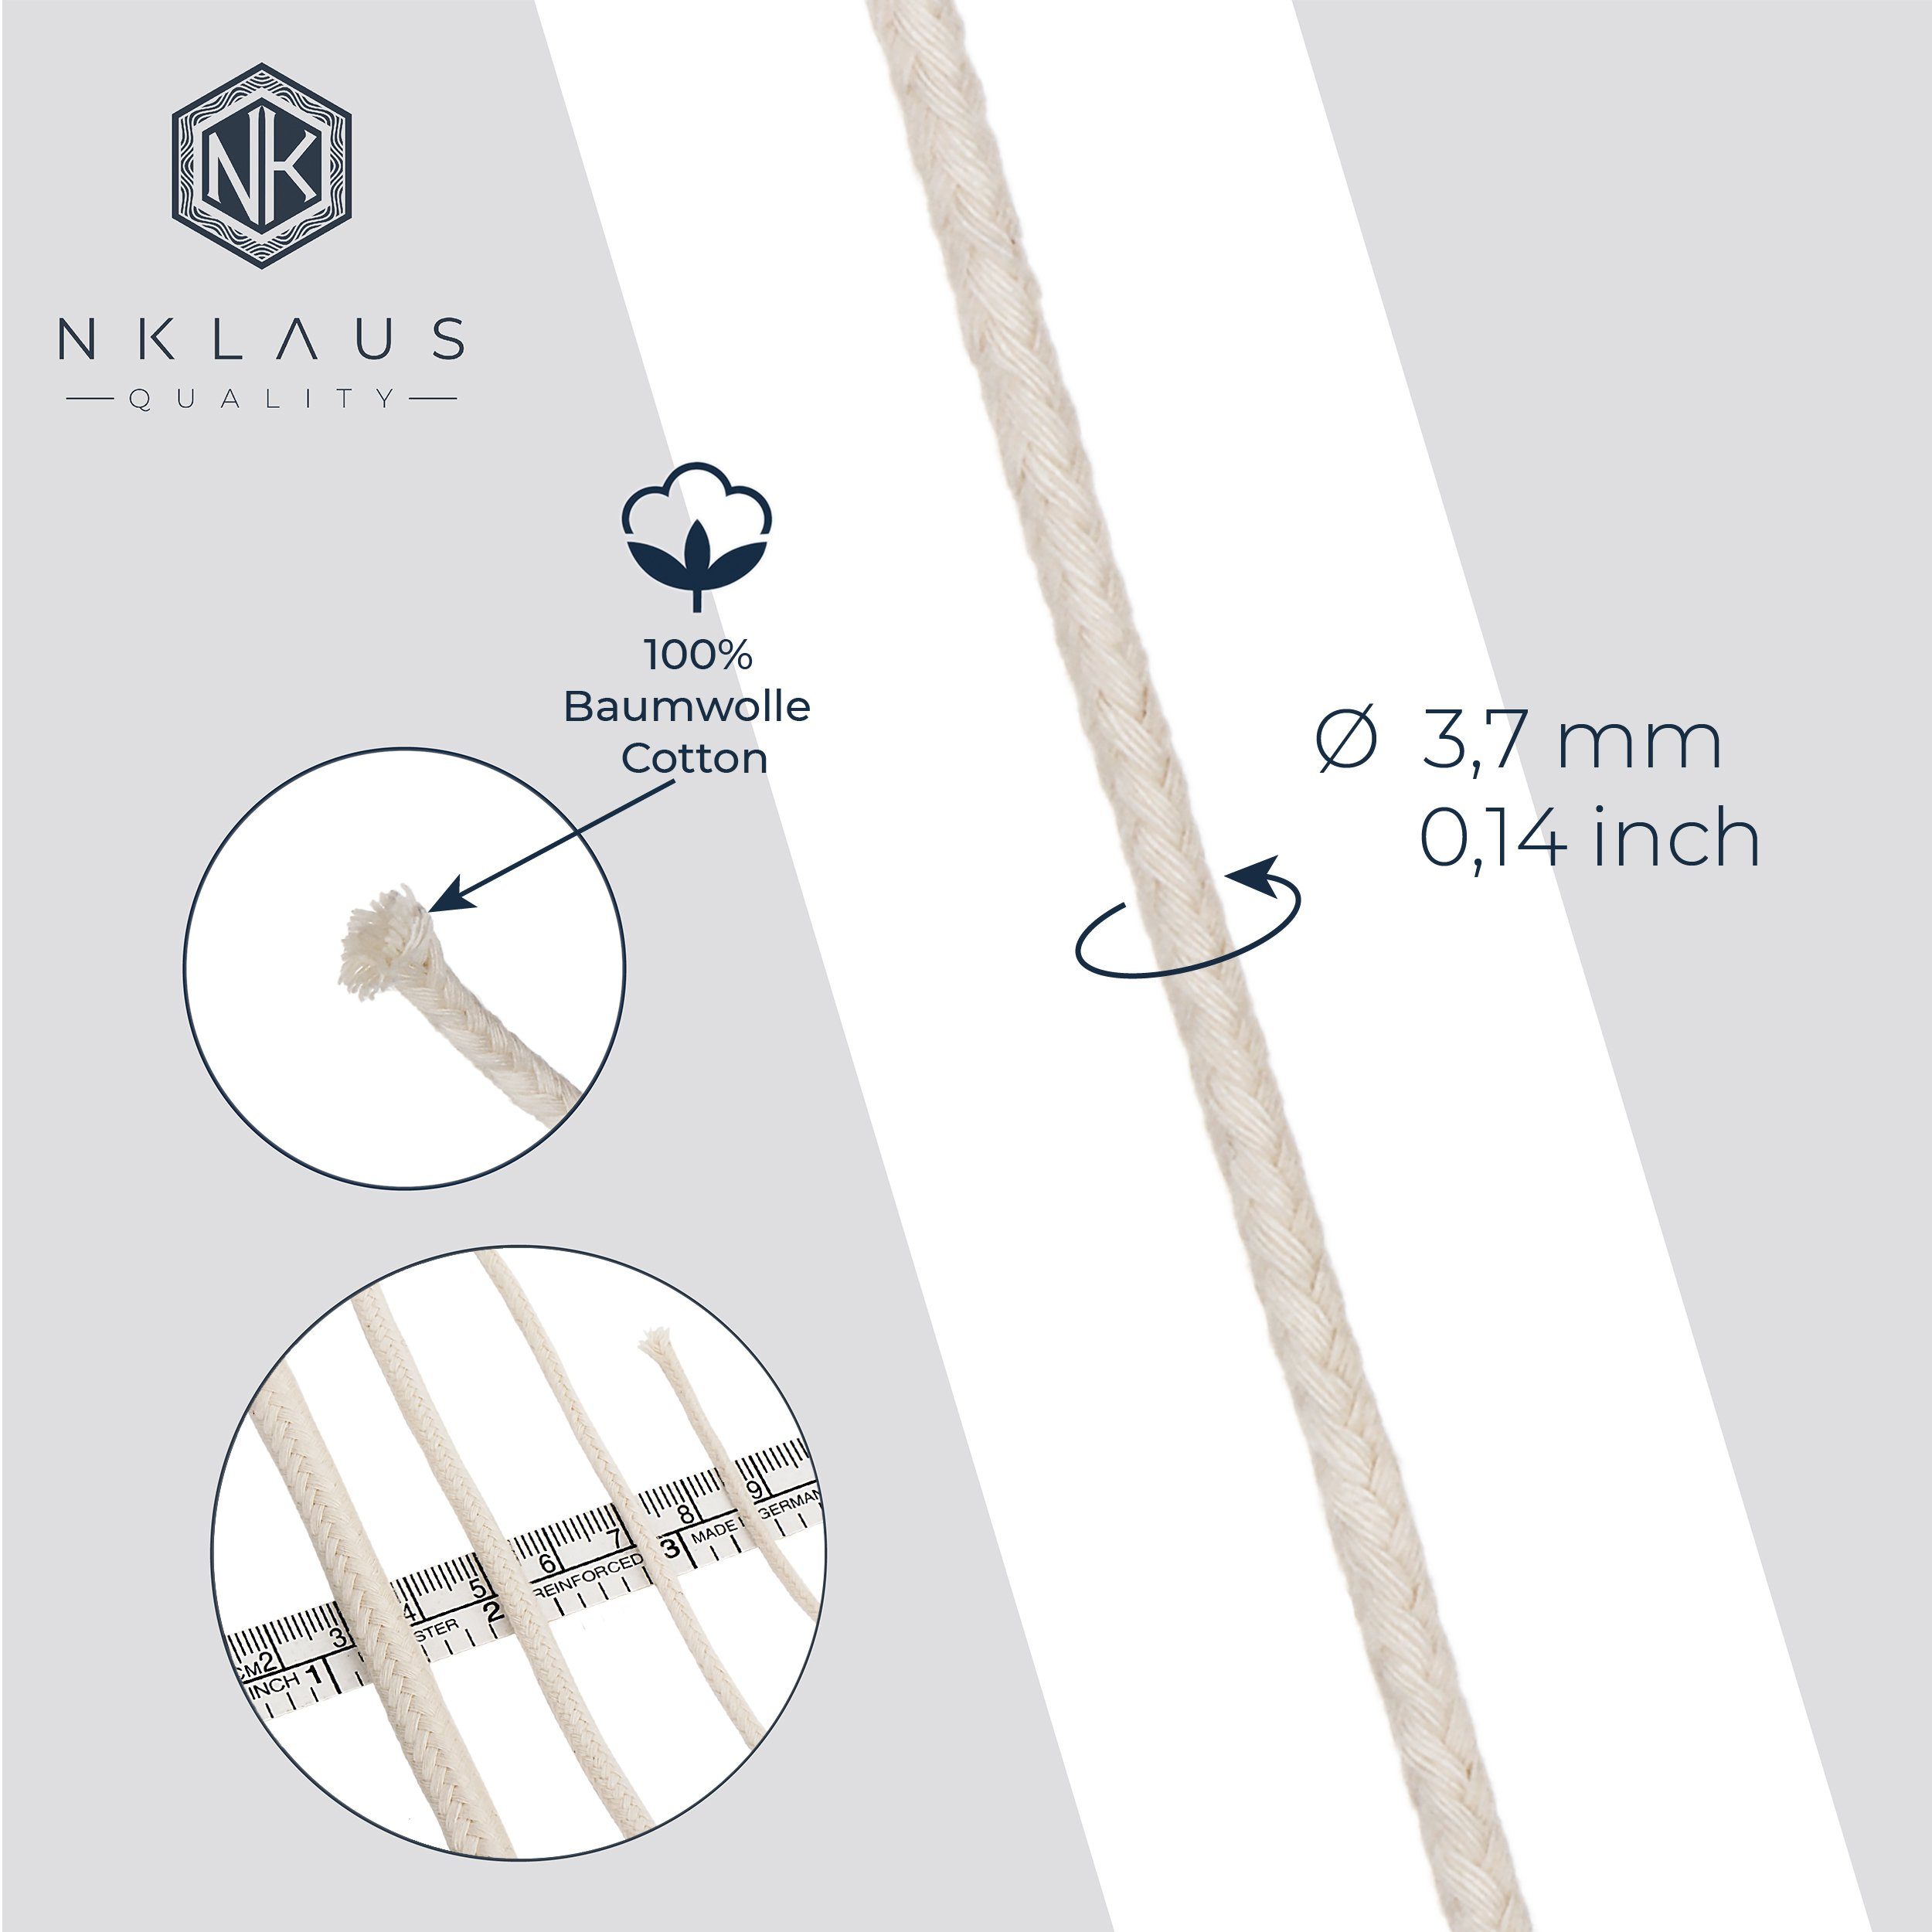 NKlaus Windlicht 3,7mm Baumwolle Runddocht meter 100% dünn 5 reine